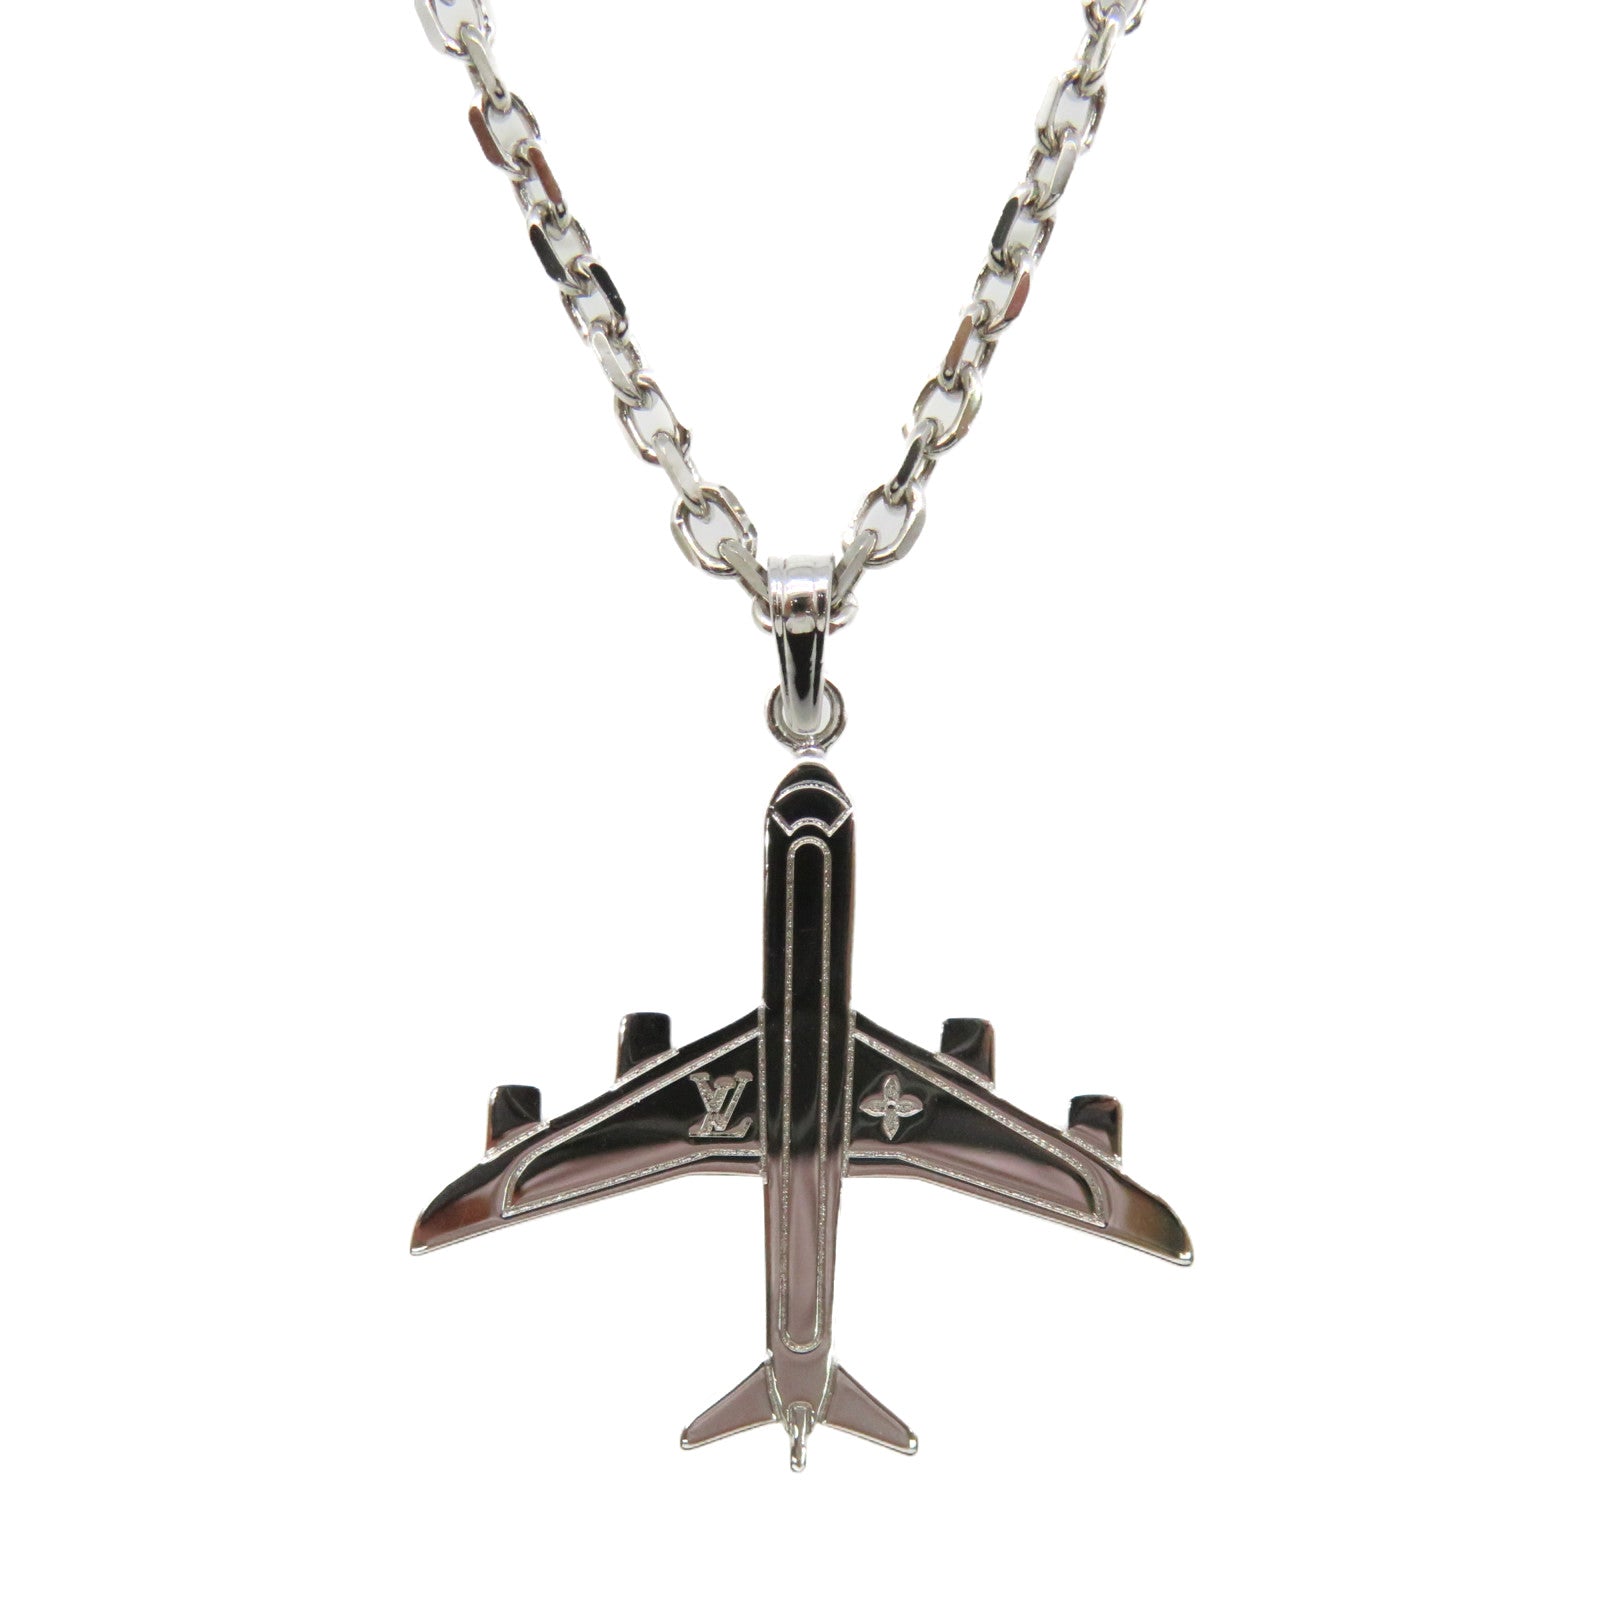 LOUIS VUITTON Metal LV Plane Necklace Necklace